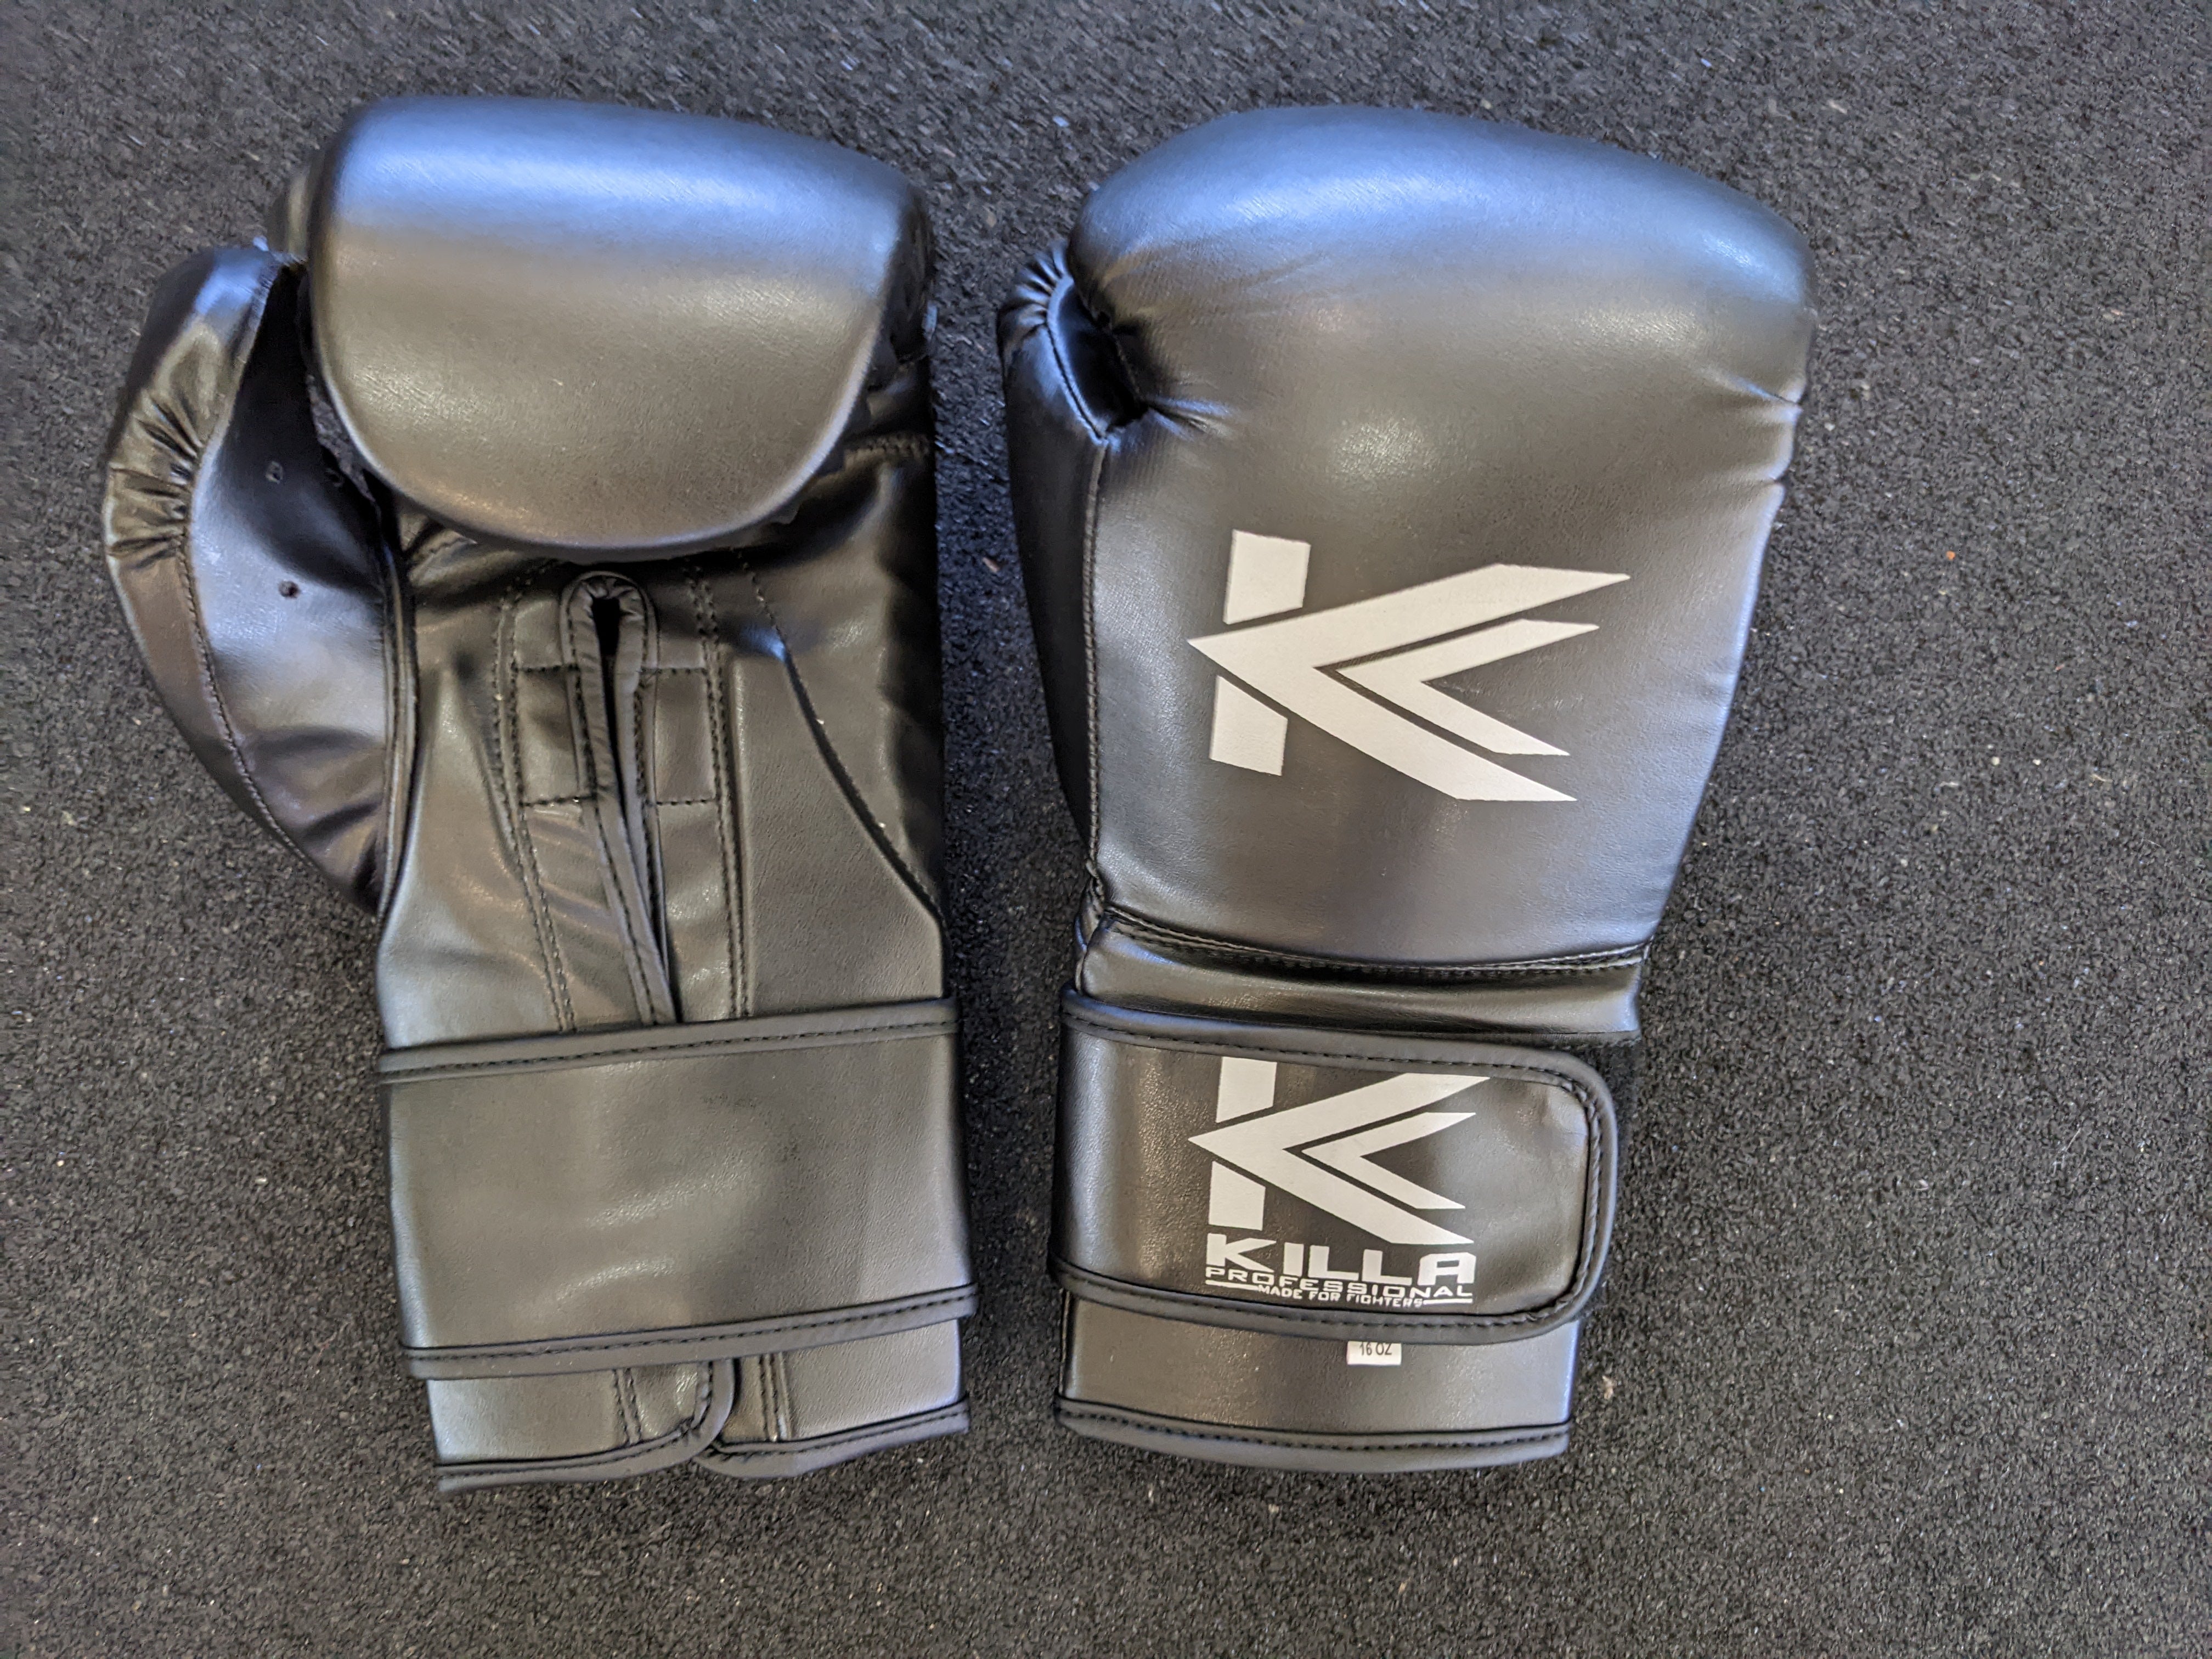 Killa Elite Training Gloves